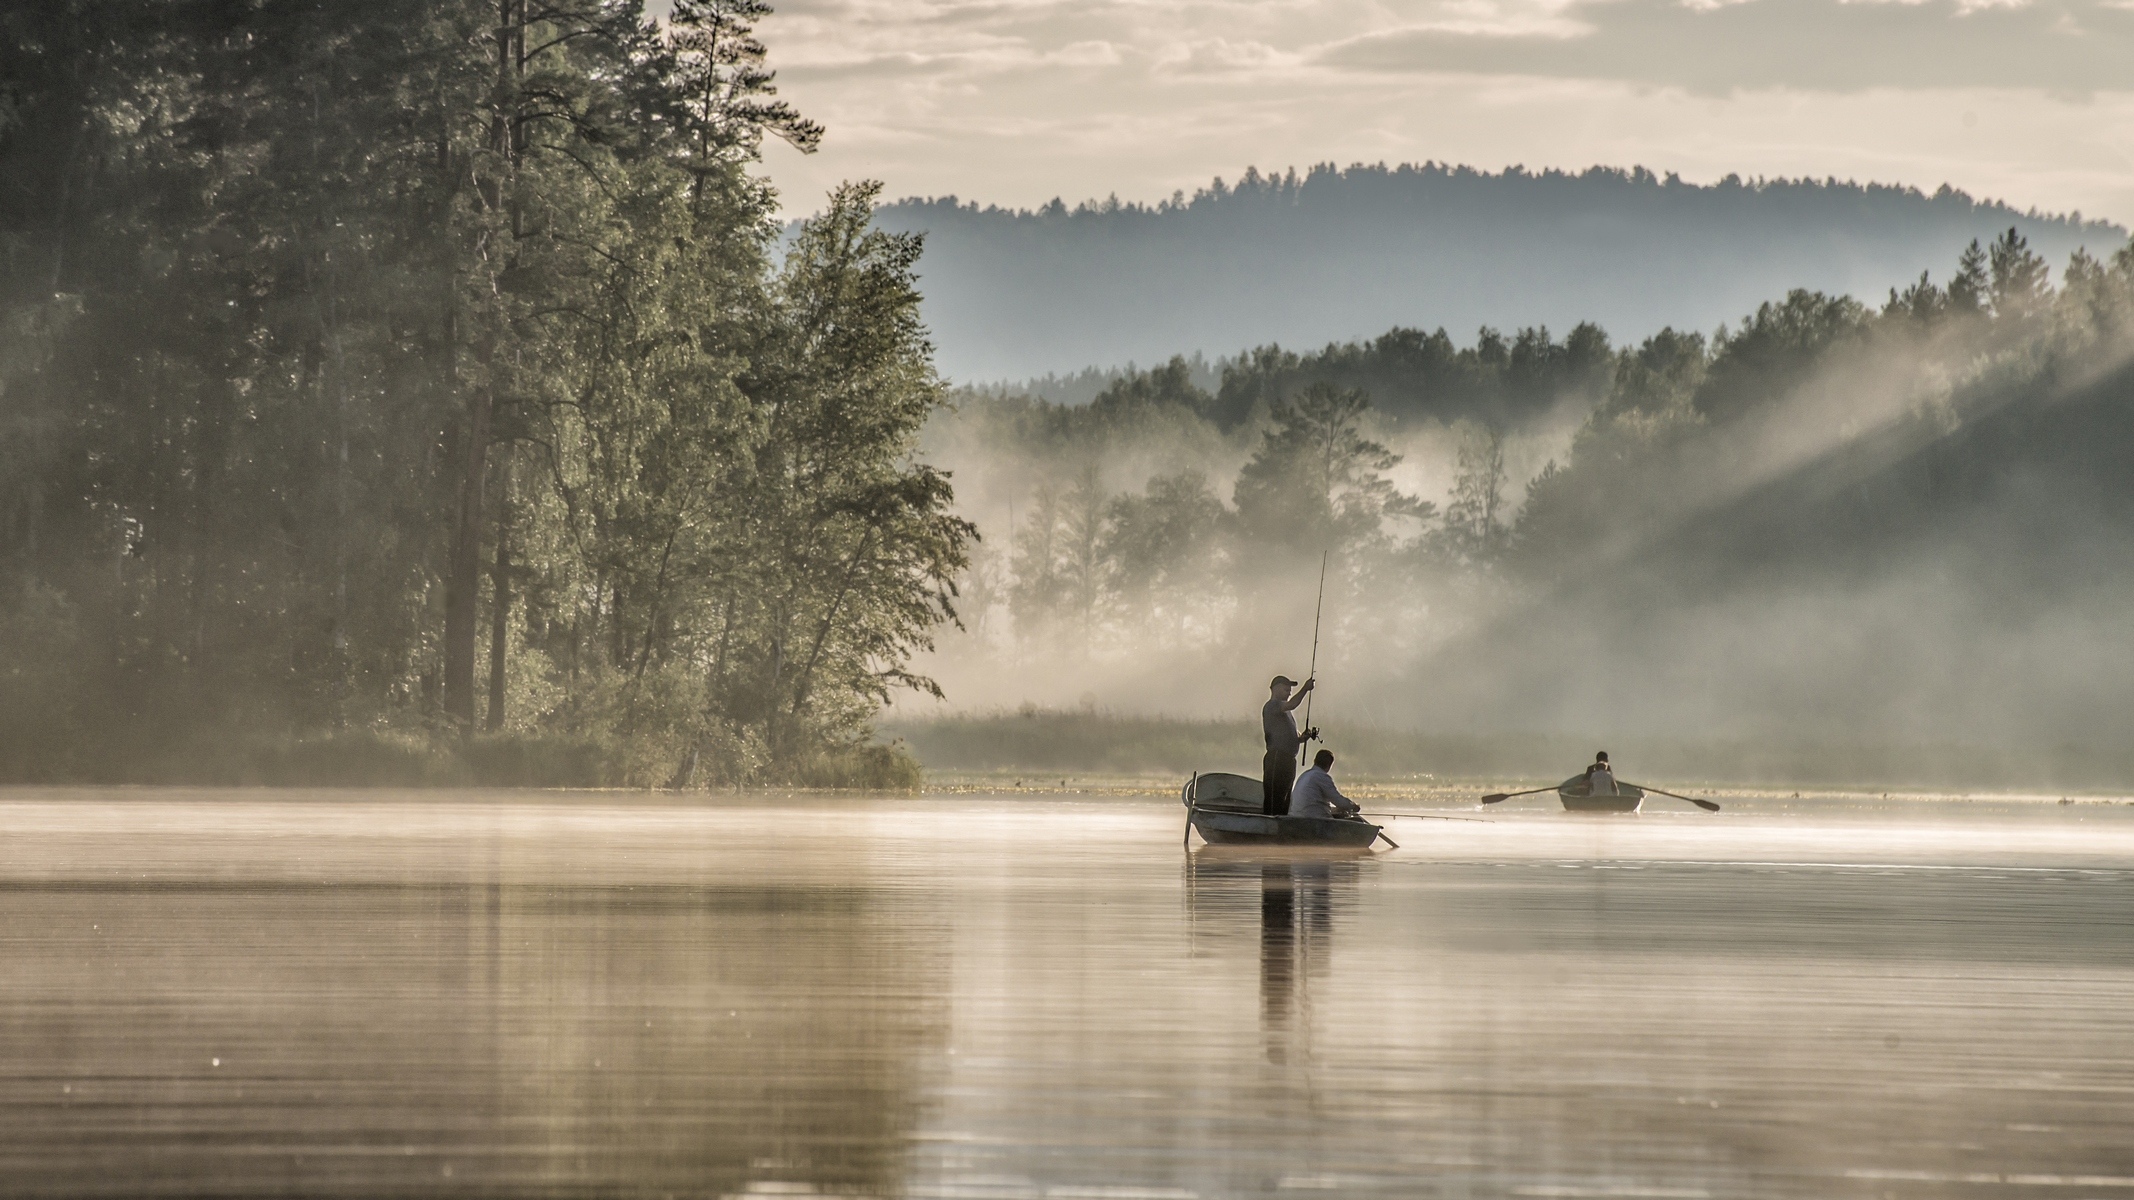 Рыбалка в тайге на озера. Рыбак в лодке на озере. Лодка в тумане. Пейзаж с рыбаком. Пейзаж с лодкой.